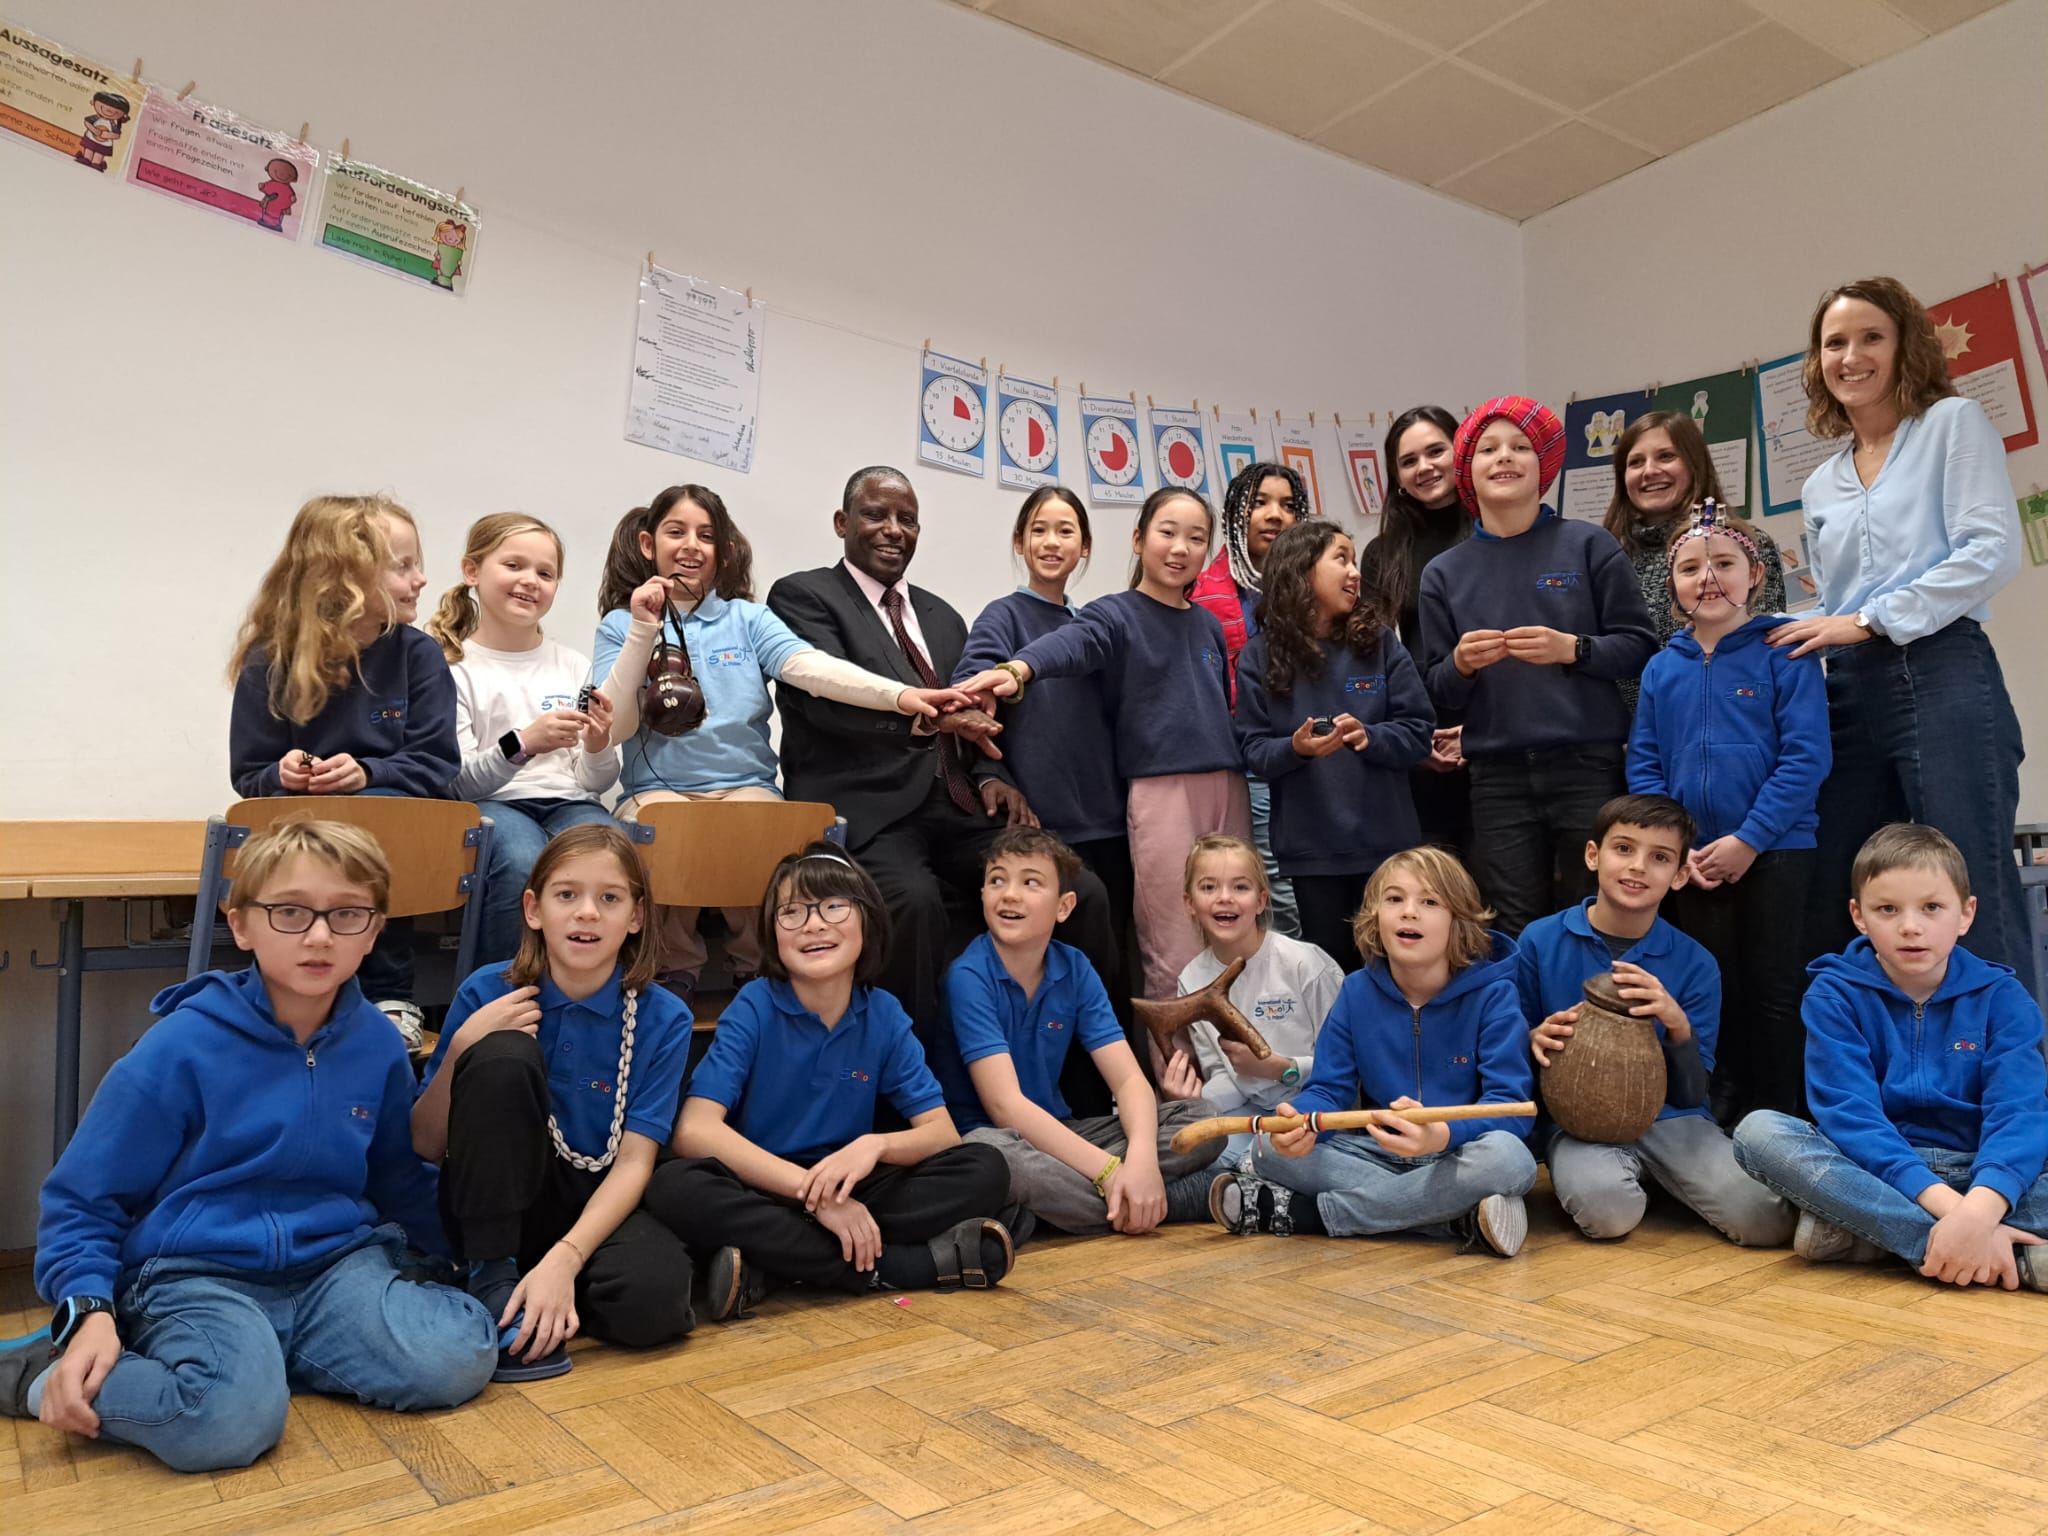 Gruppenfoto des Projektpartnerbesuchs 2022 (Kenia, PACIDA) in der International School in St. Pölten.